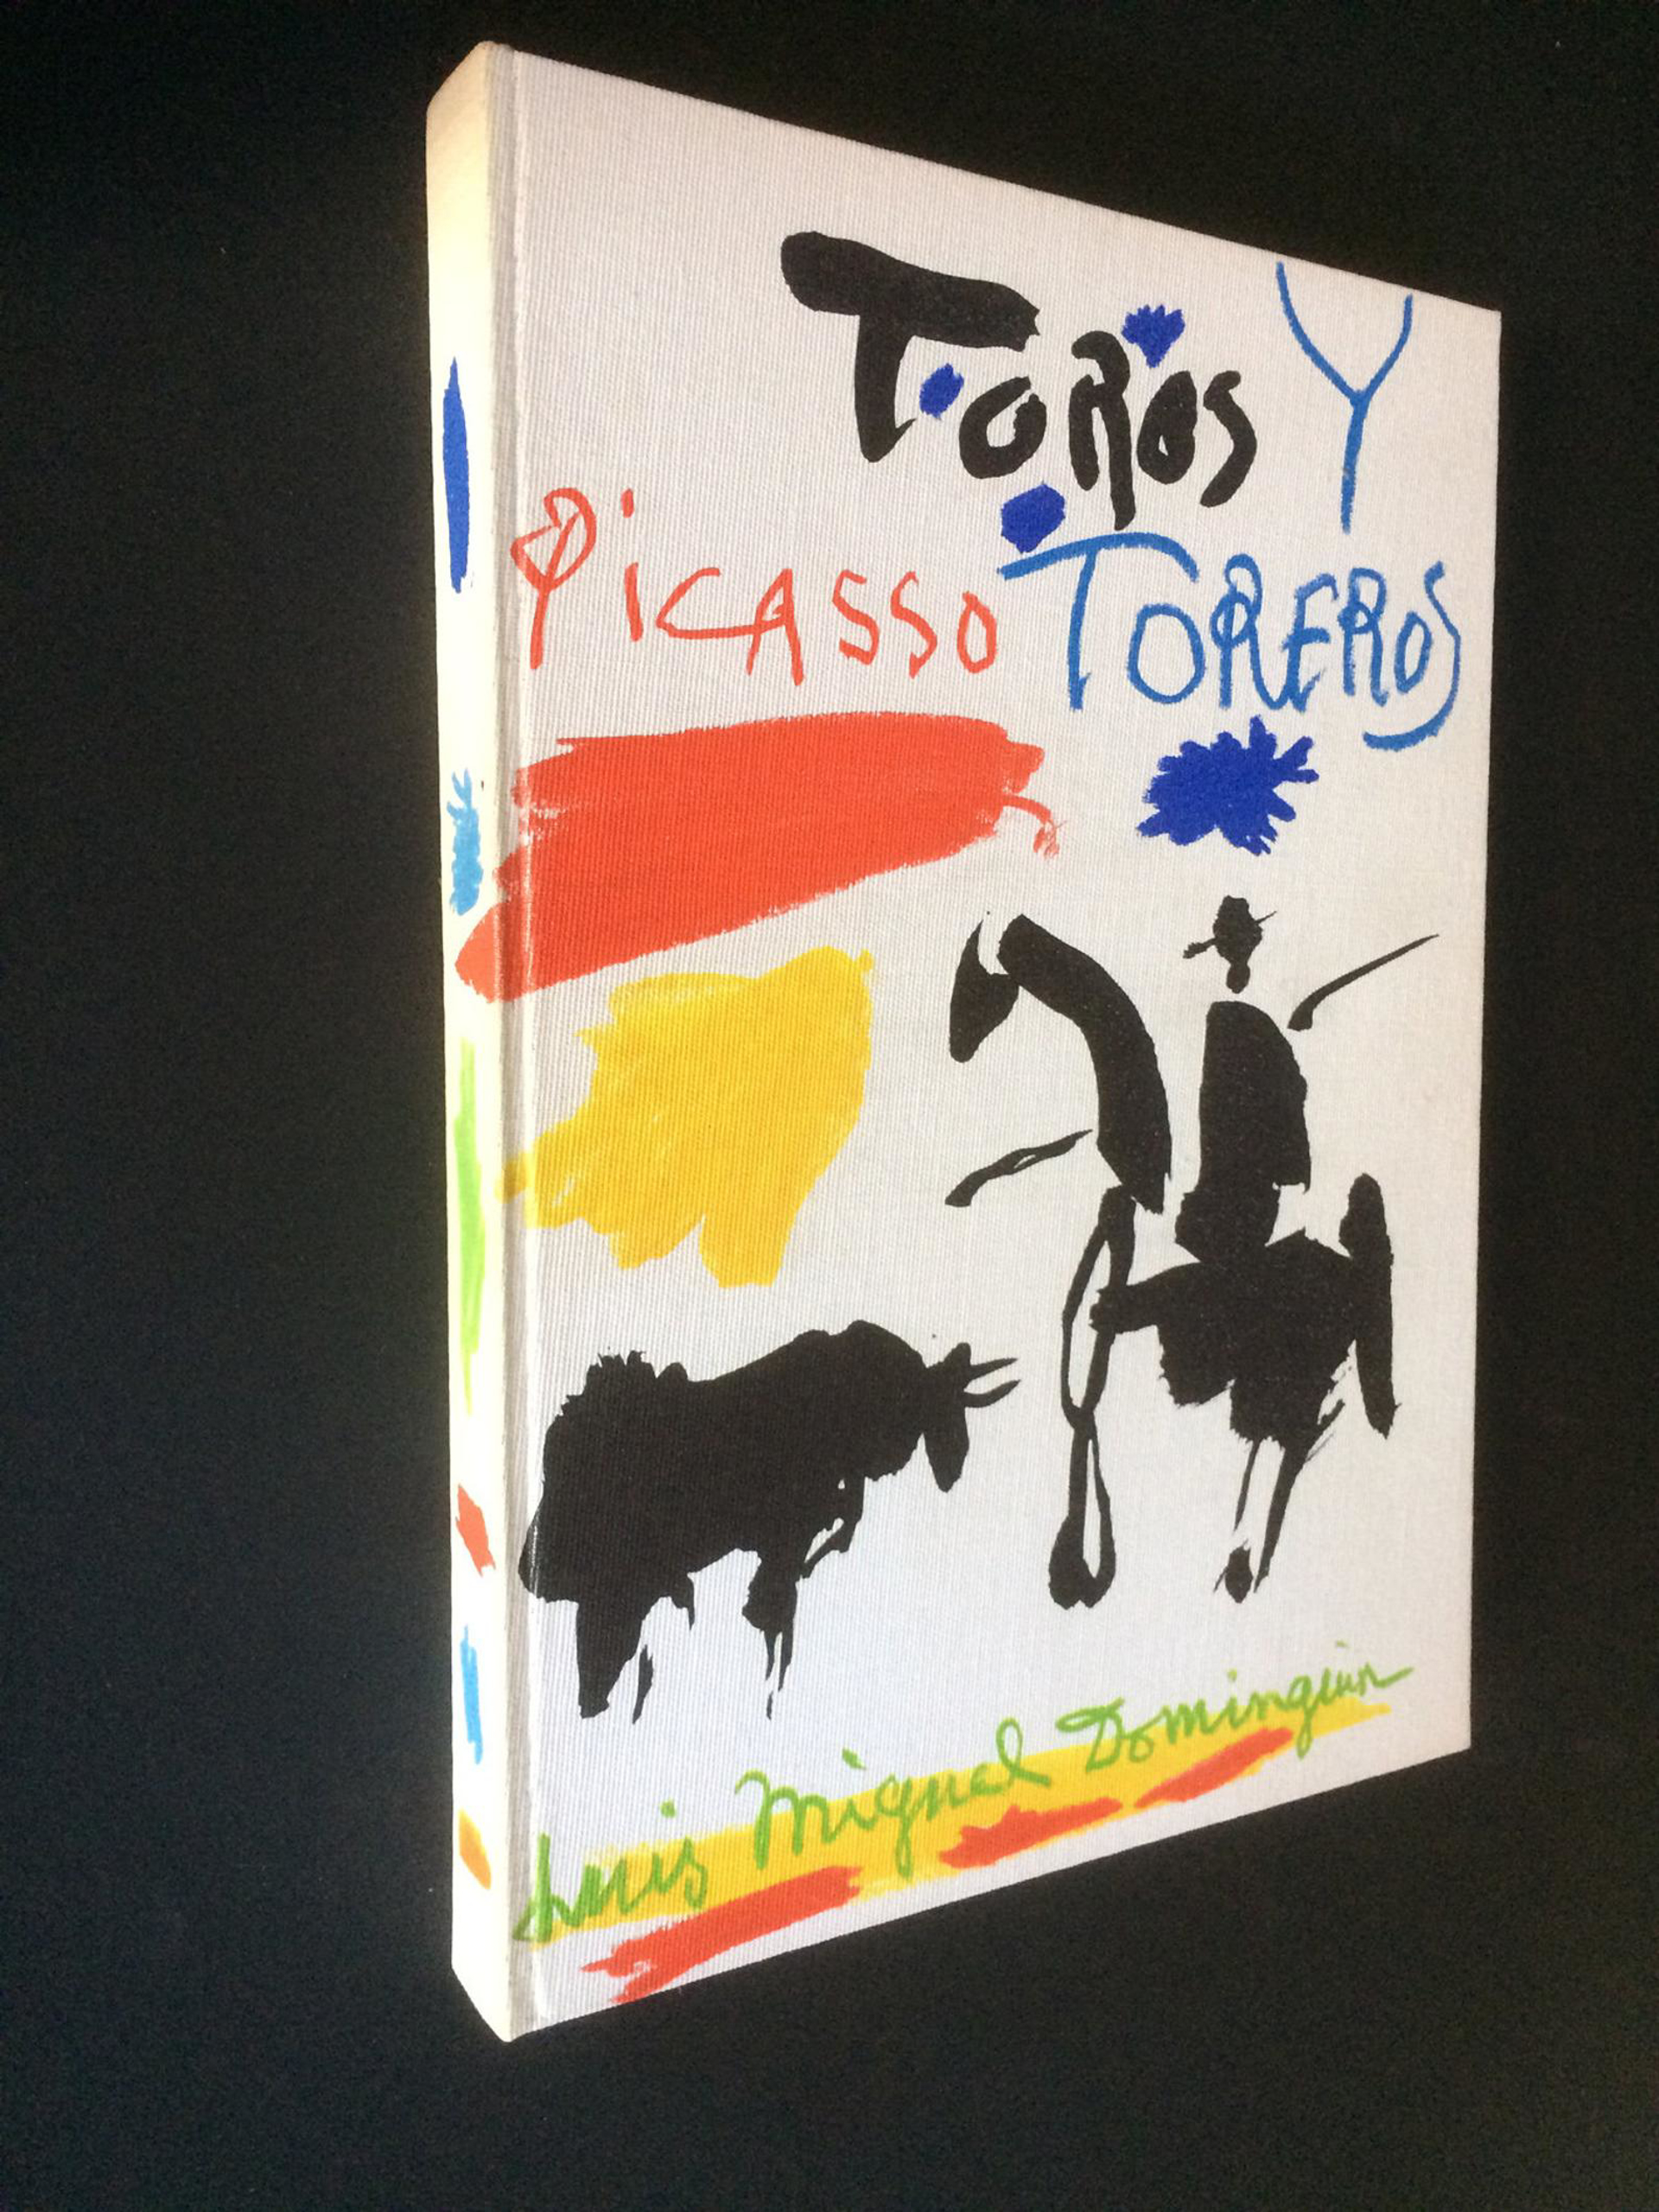 Toros Y Toreros Complete Book by Pablo Picasso (1881 - 1973)